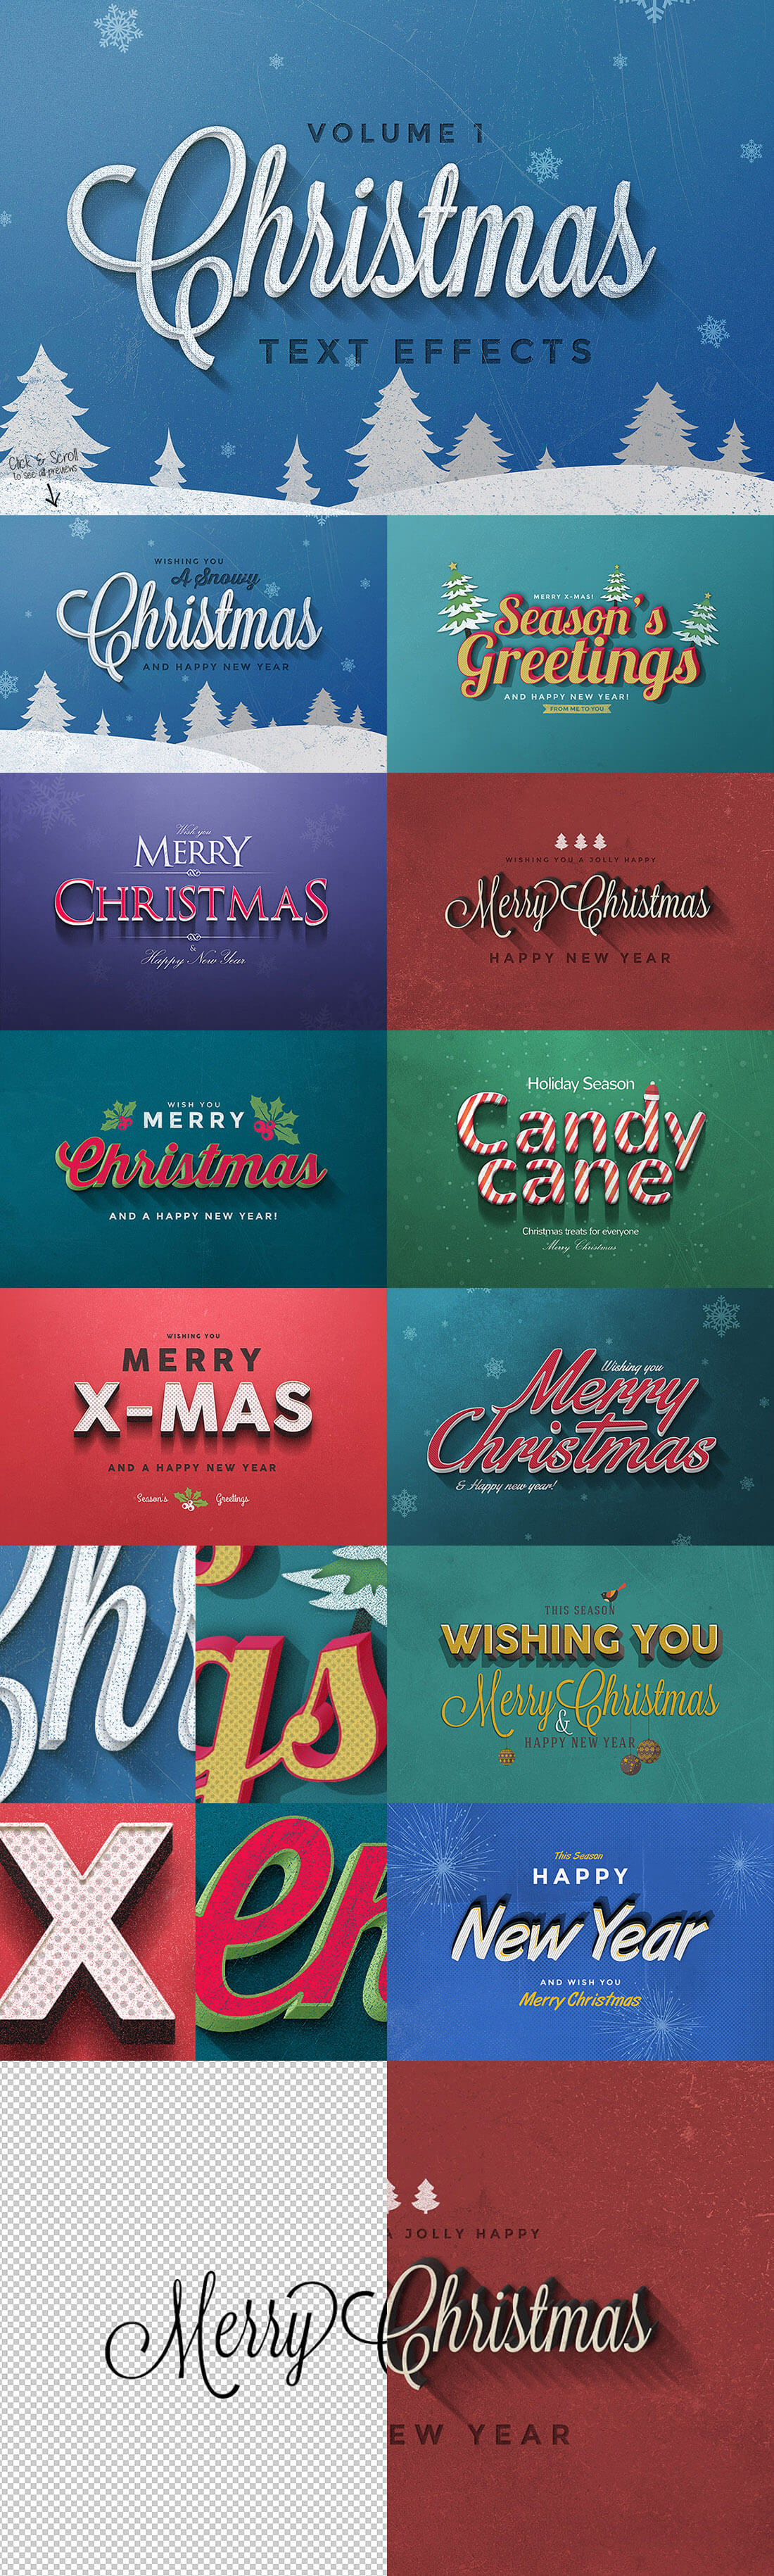 圣诞特典：400+圣诞主题设计素材包 Christmas Bundle 2016（2.35GB, AI, EPS, PSD 格式）插图2